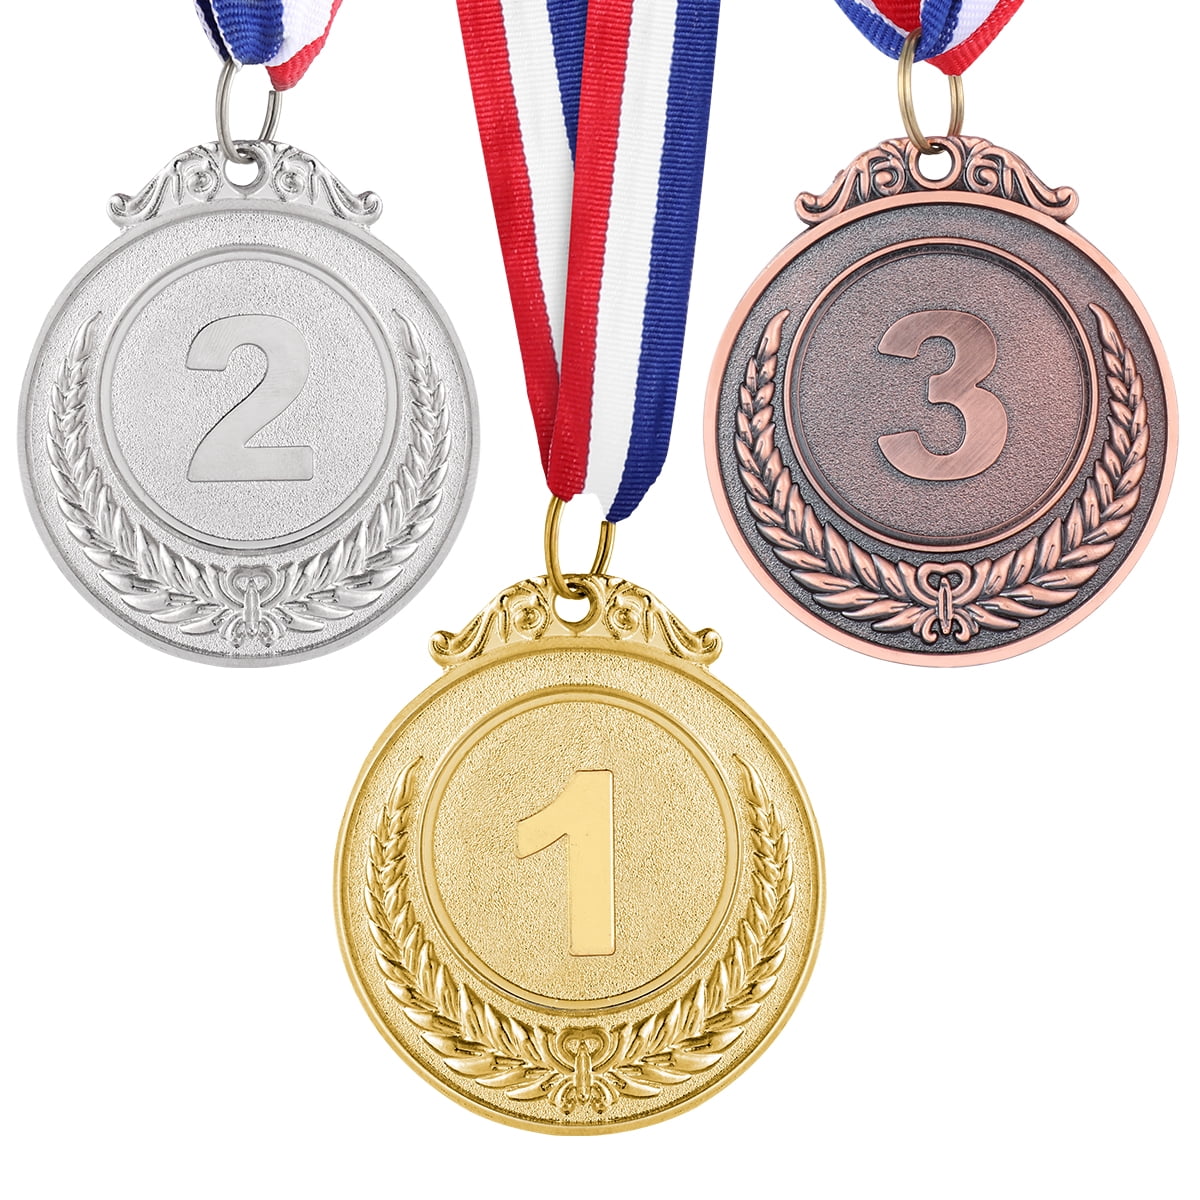 2 Platz Kleines Weizenmuster Gold Silber Bronze Medaillen mit Halsband für den Sportwissenschaftswettbewerb 3 TOYANDONA 3pcs Sport Award Medal Set 1 